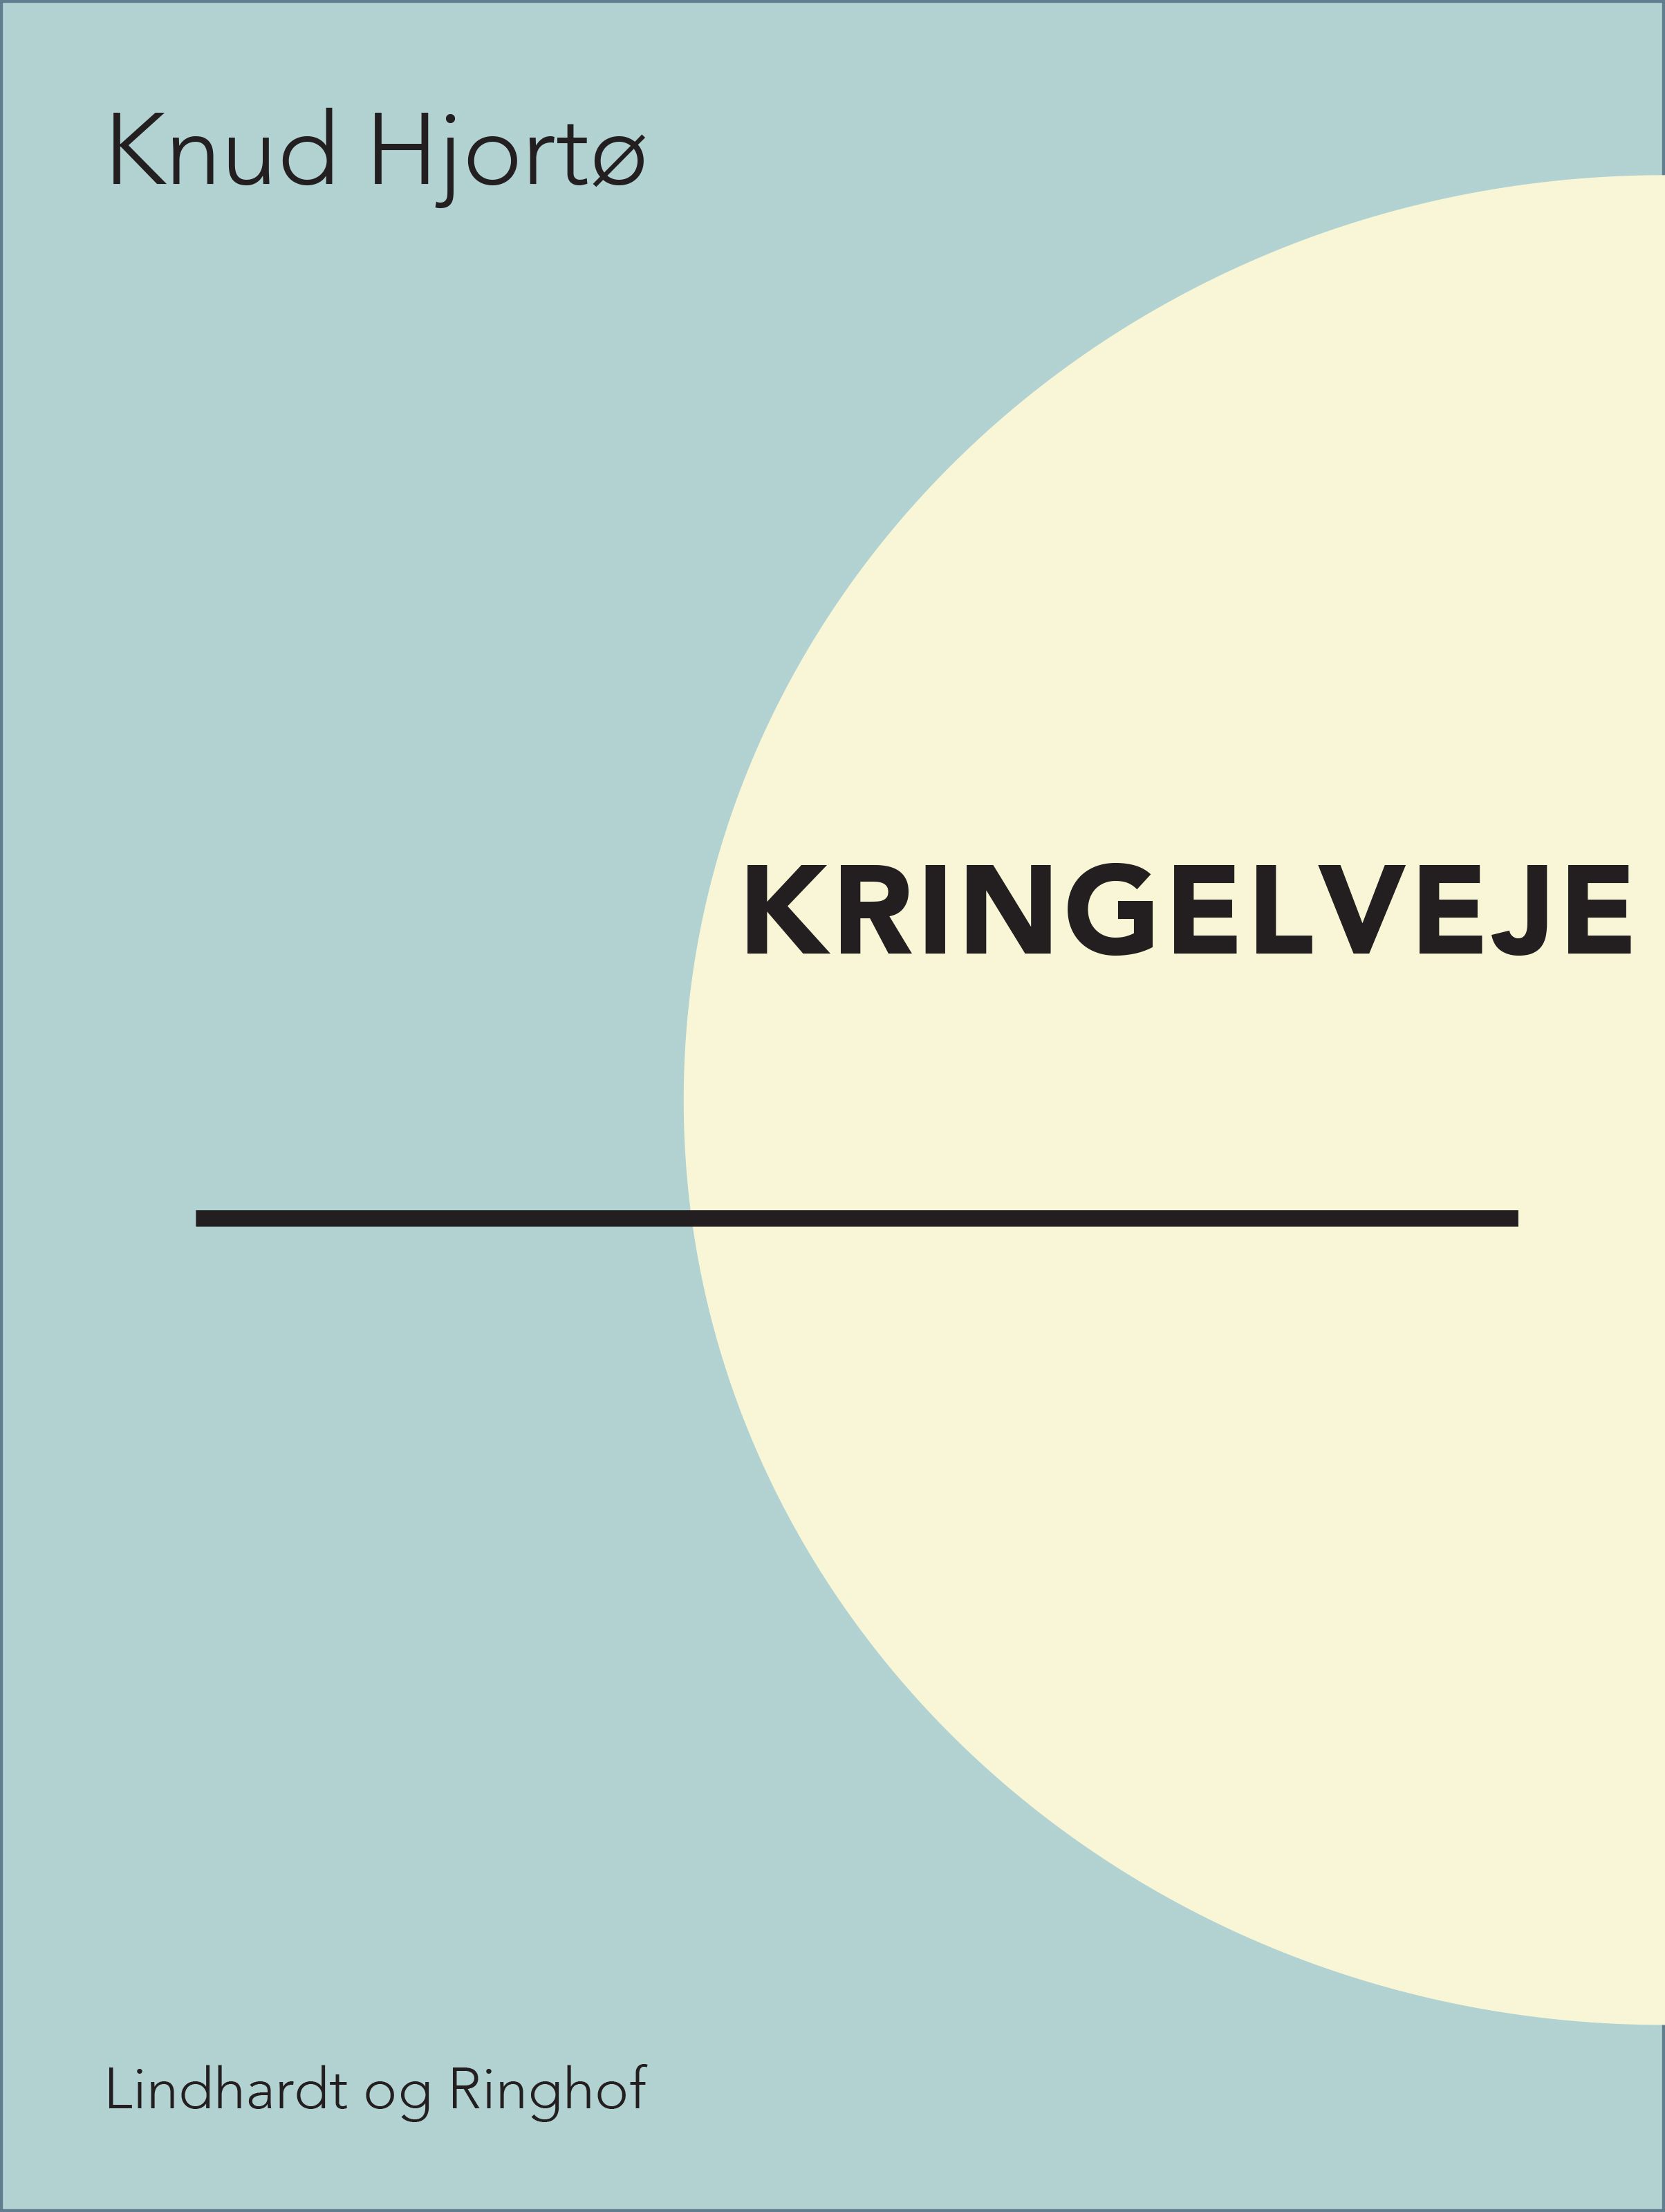 Kringelveje, eBook by Knud Hjortø